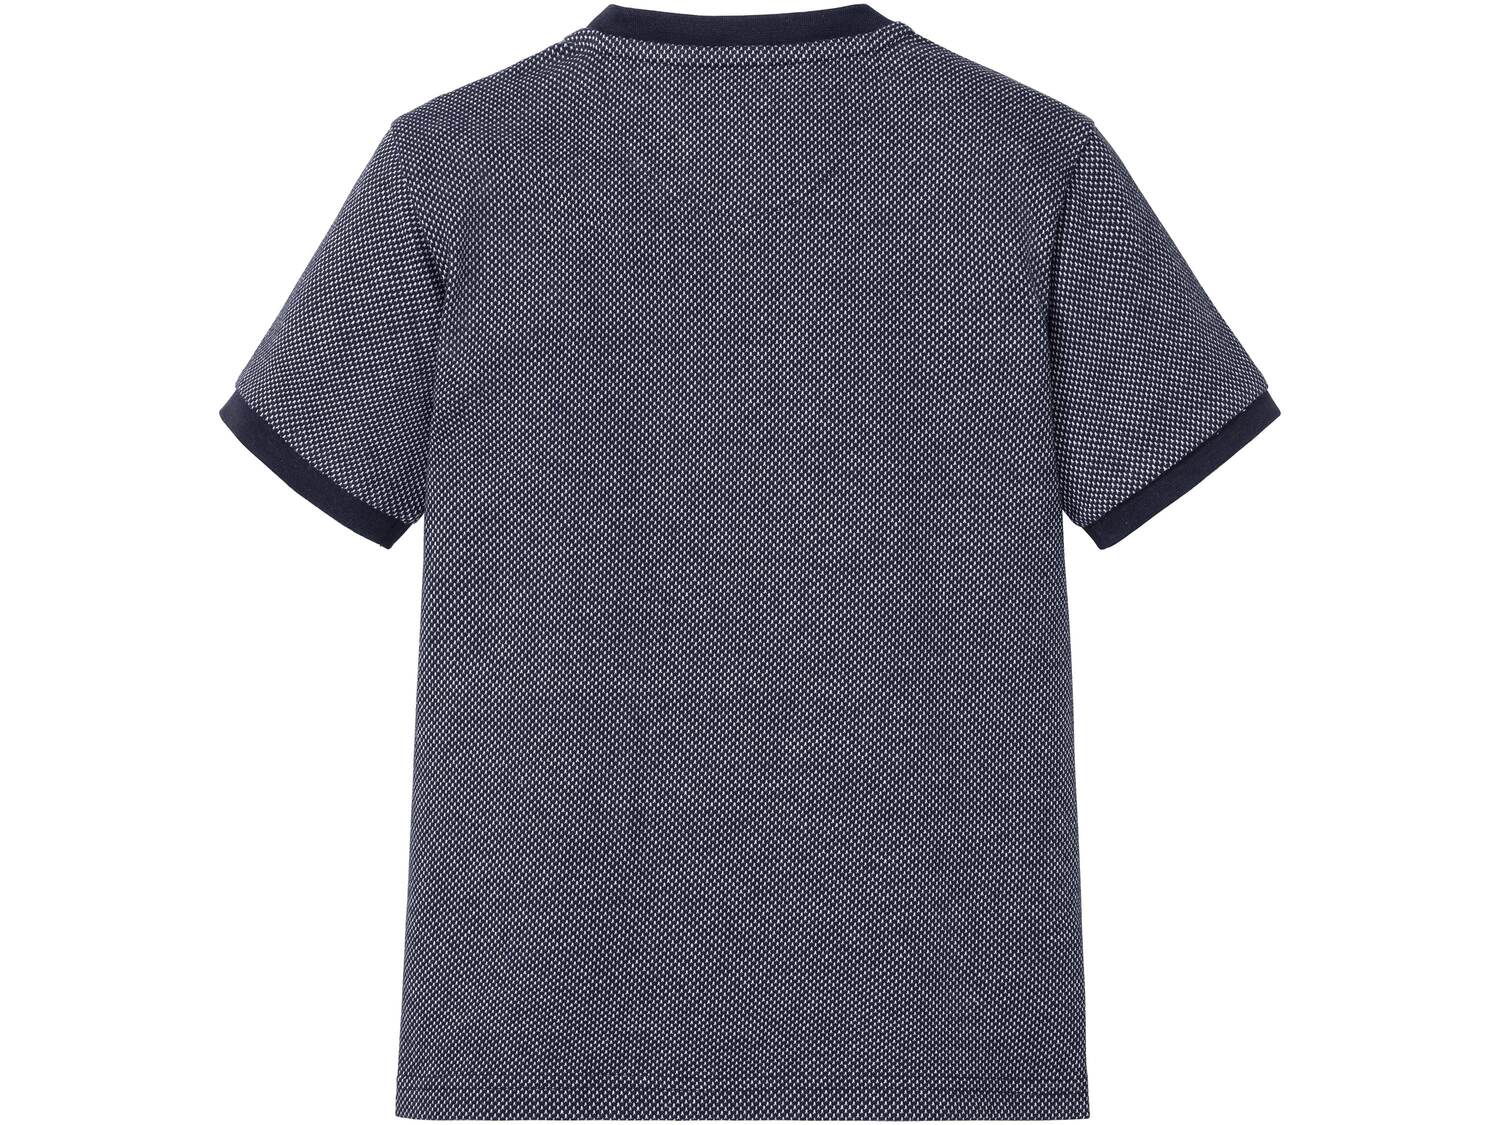 Koszulka chłopięca polo Pepperts, cena 19,99 PLN 
- rozmiary: 122-164
- 100% bawełny
- ...